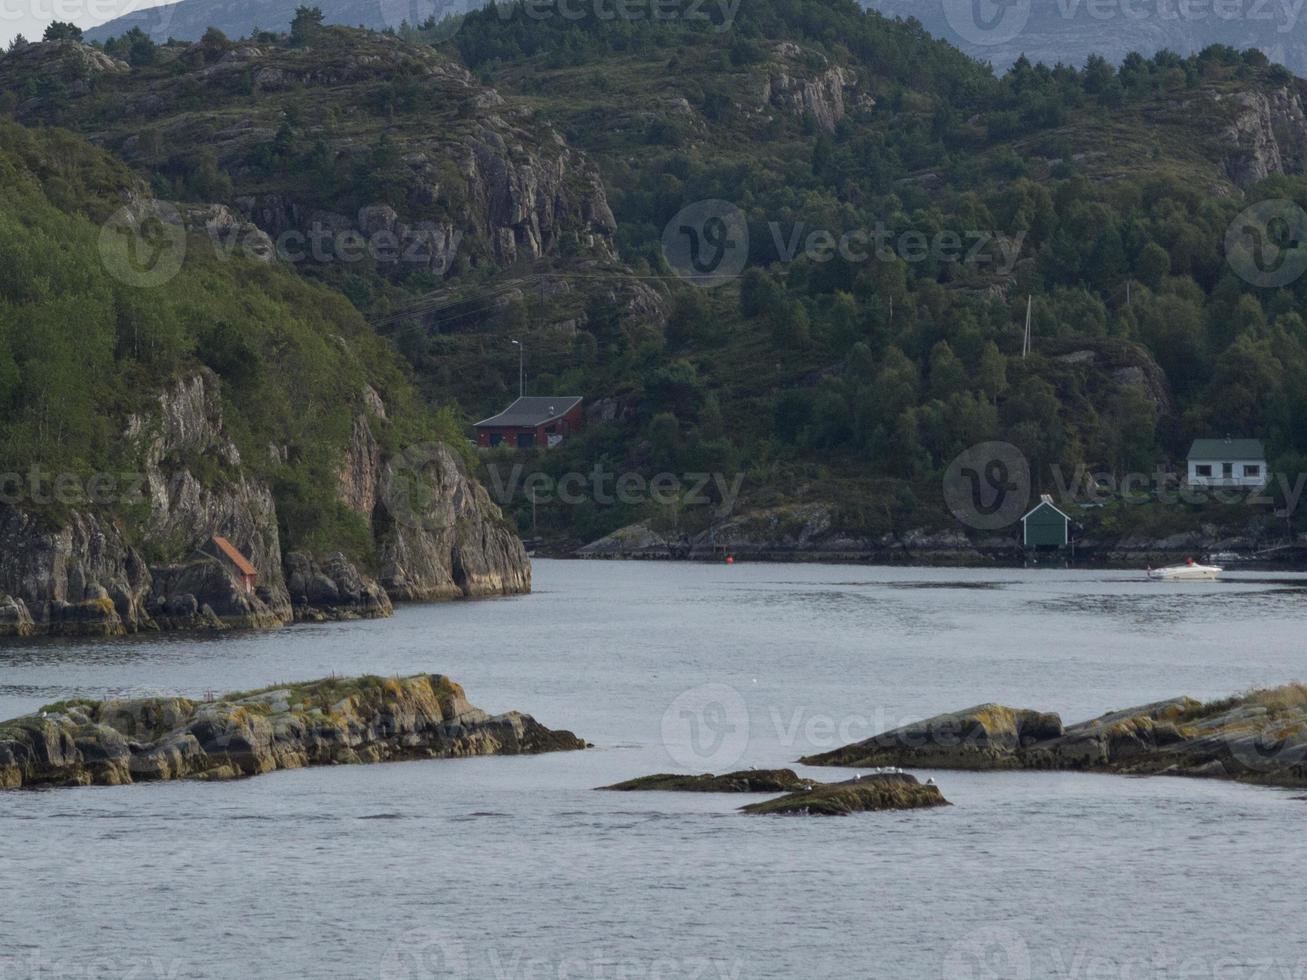 croisière dans les fjords norvégiens photo